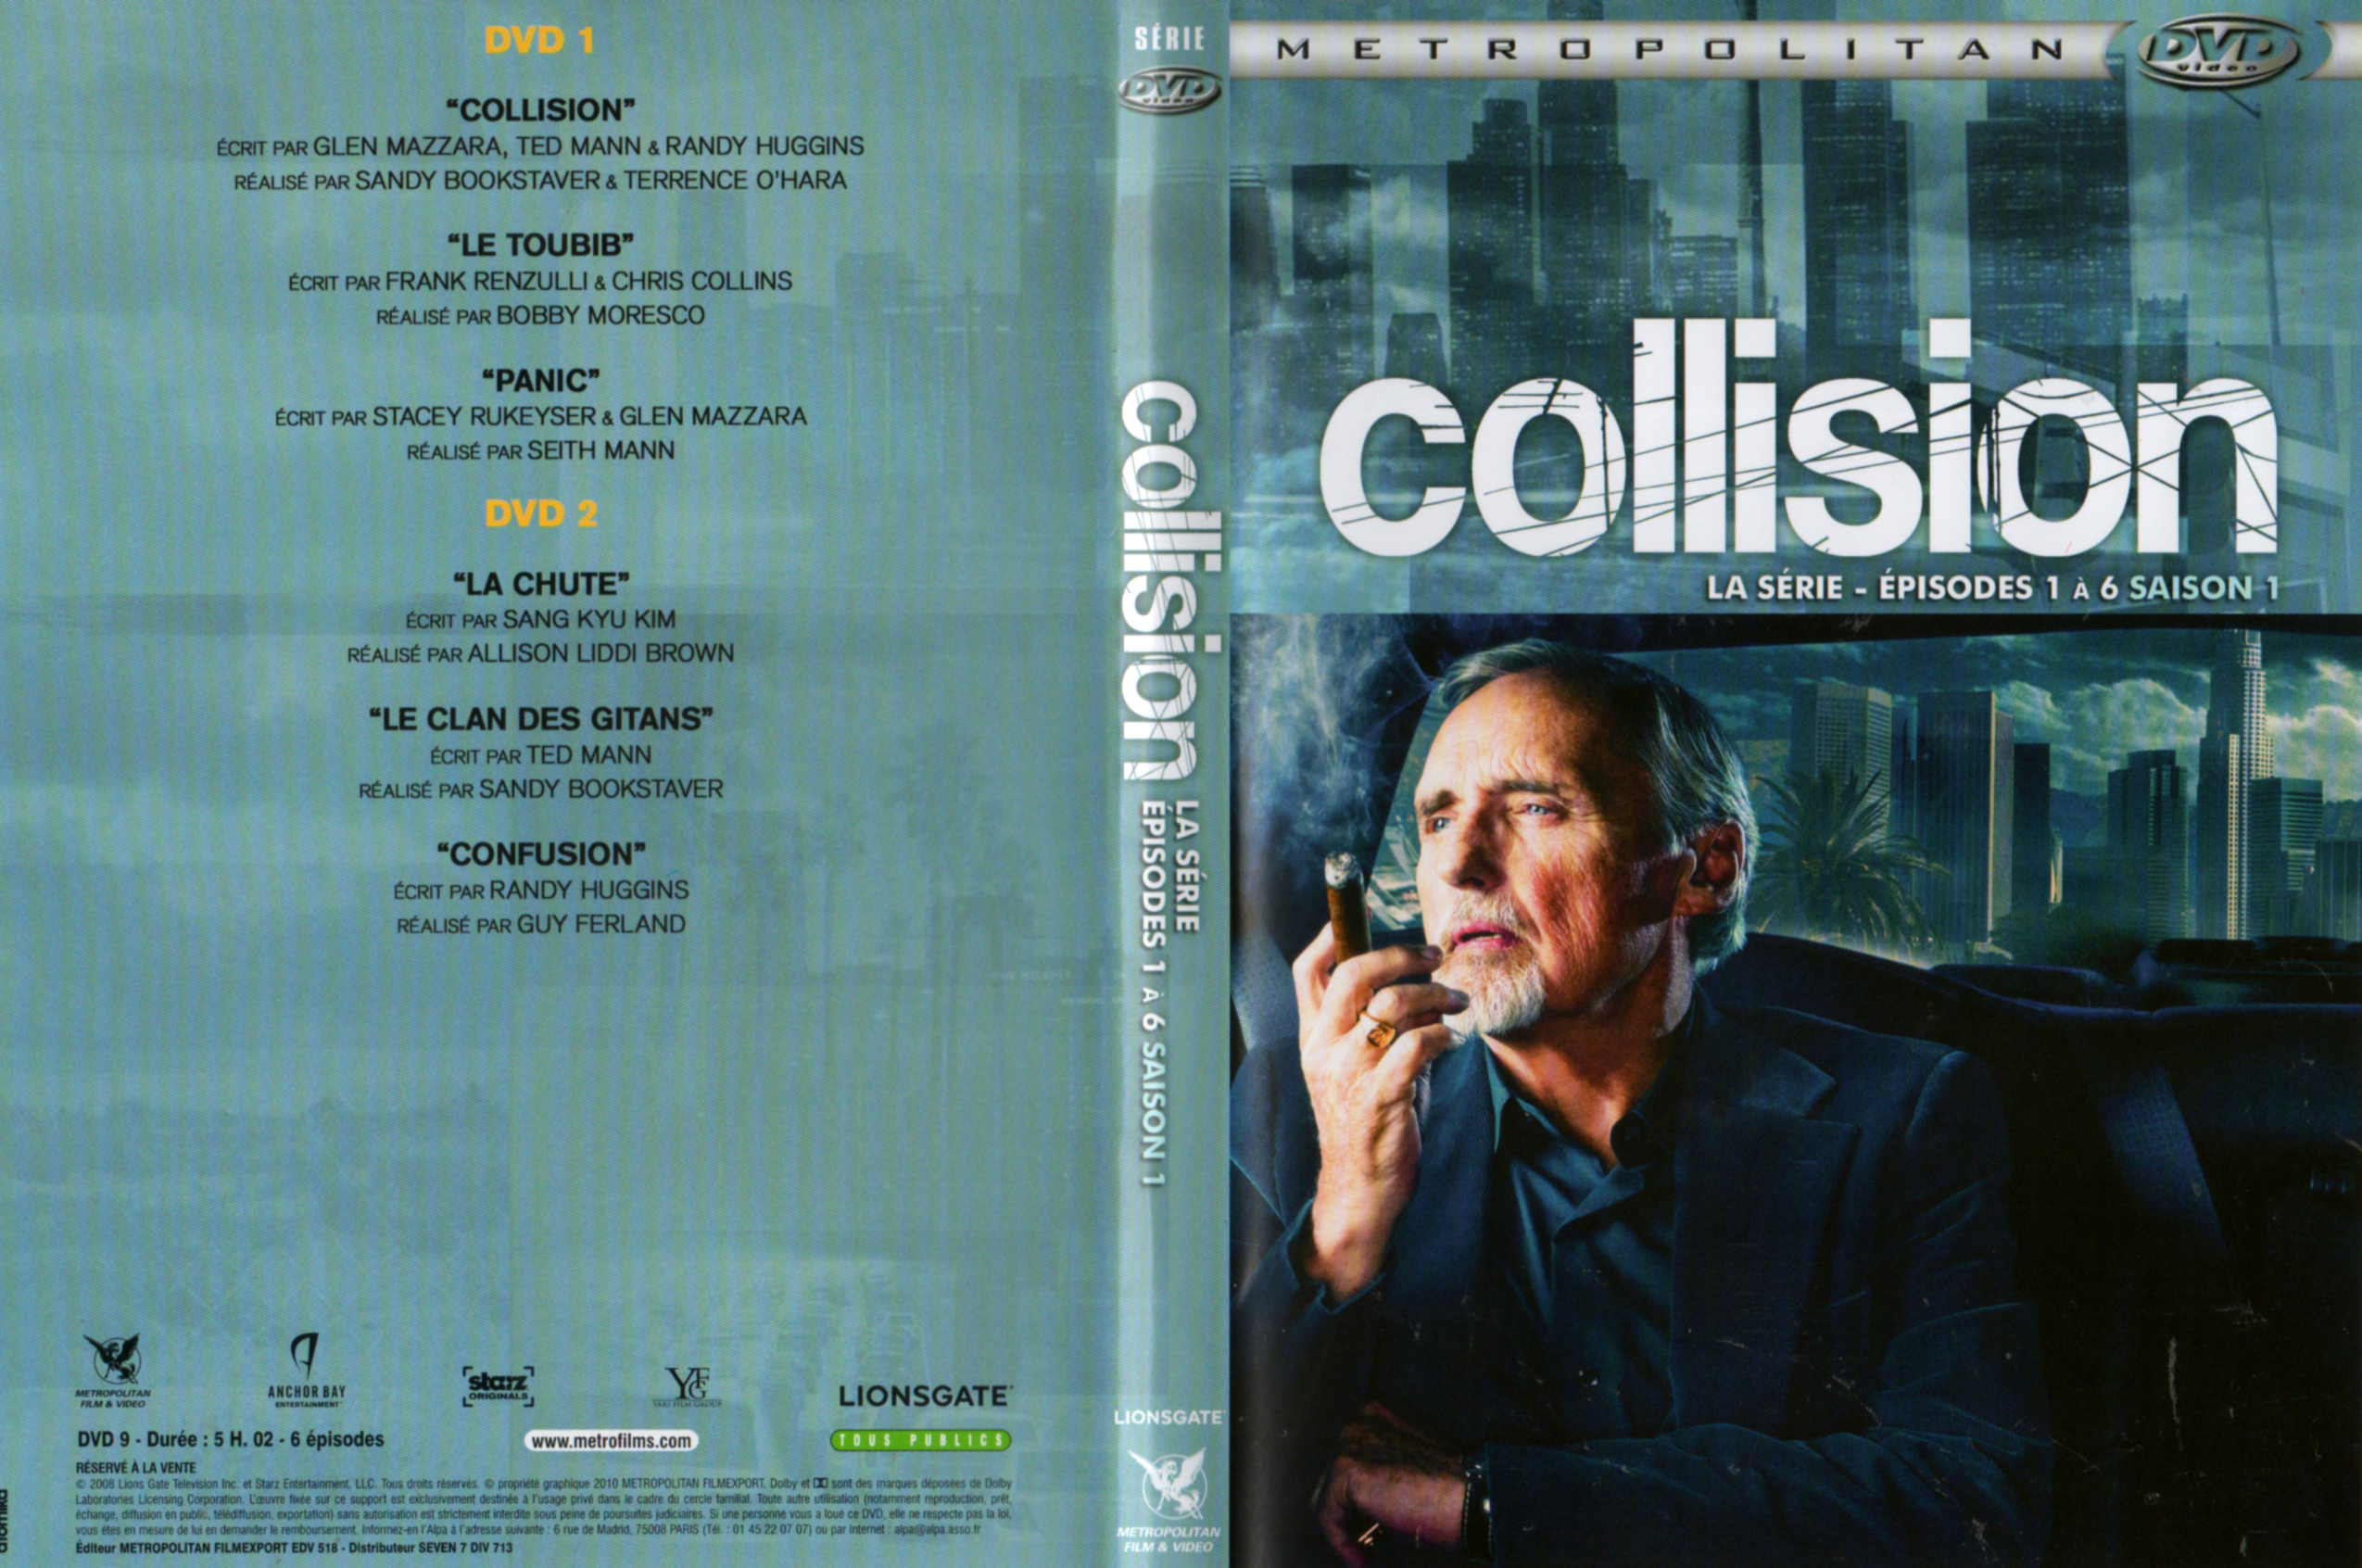 Jaquette DVD Collision La srie (DVD 1)